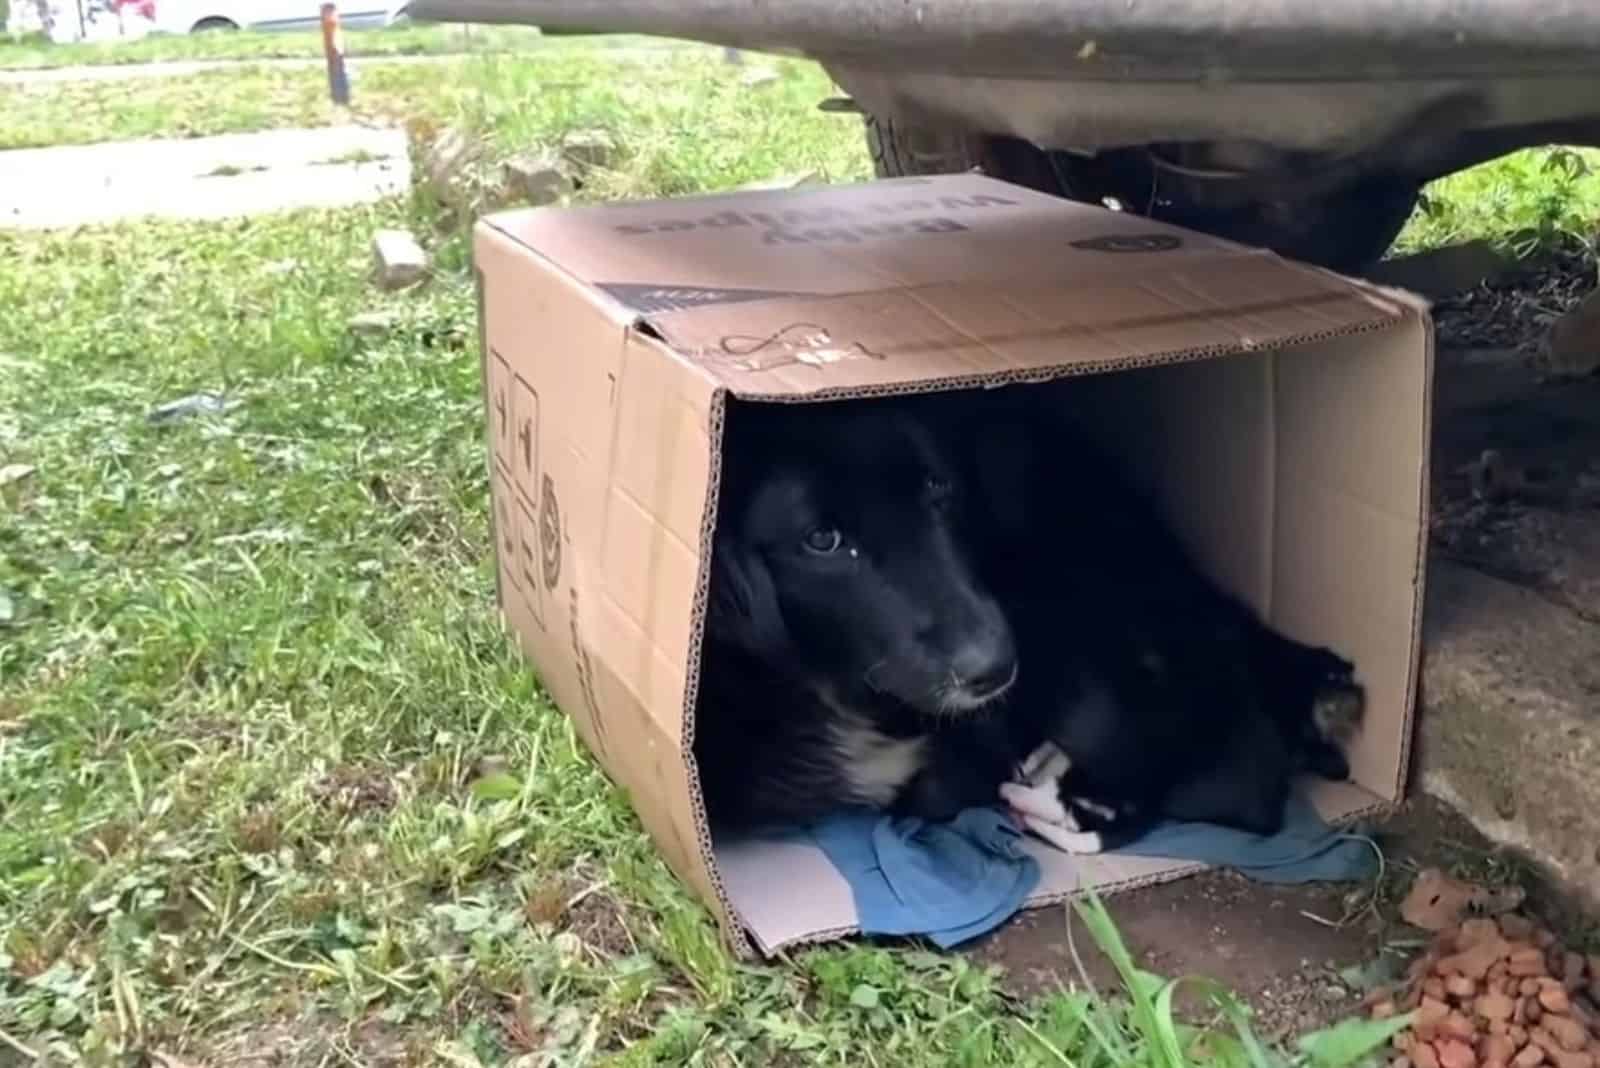 stray black dog lying in a cardboard box